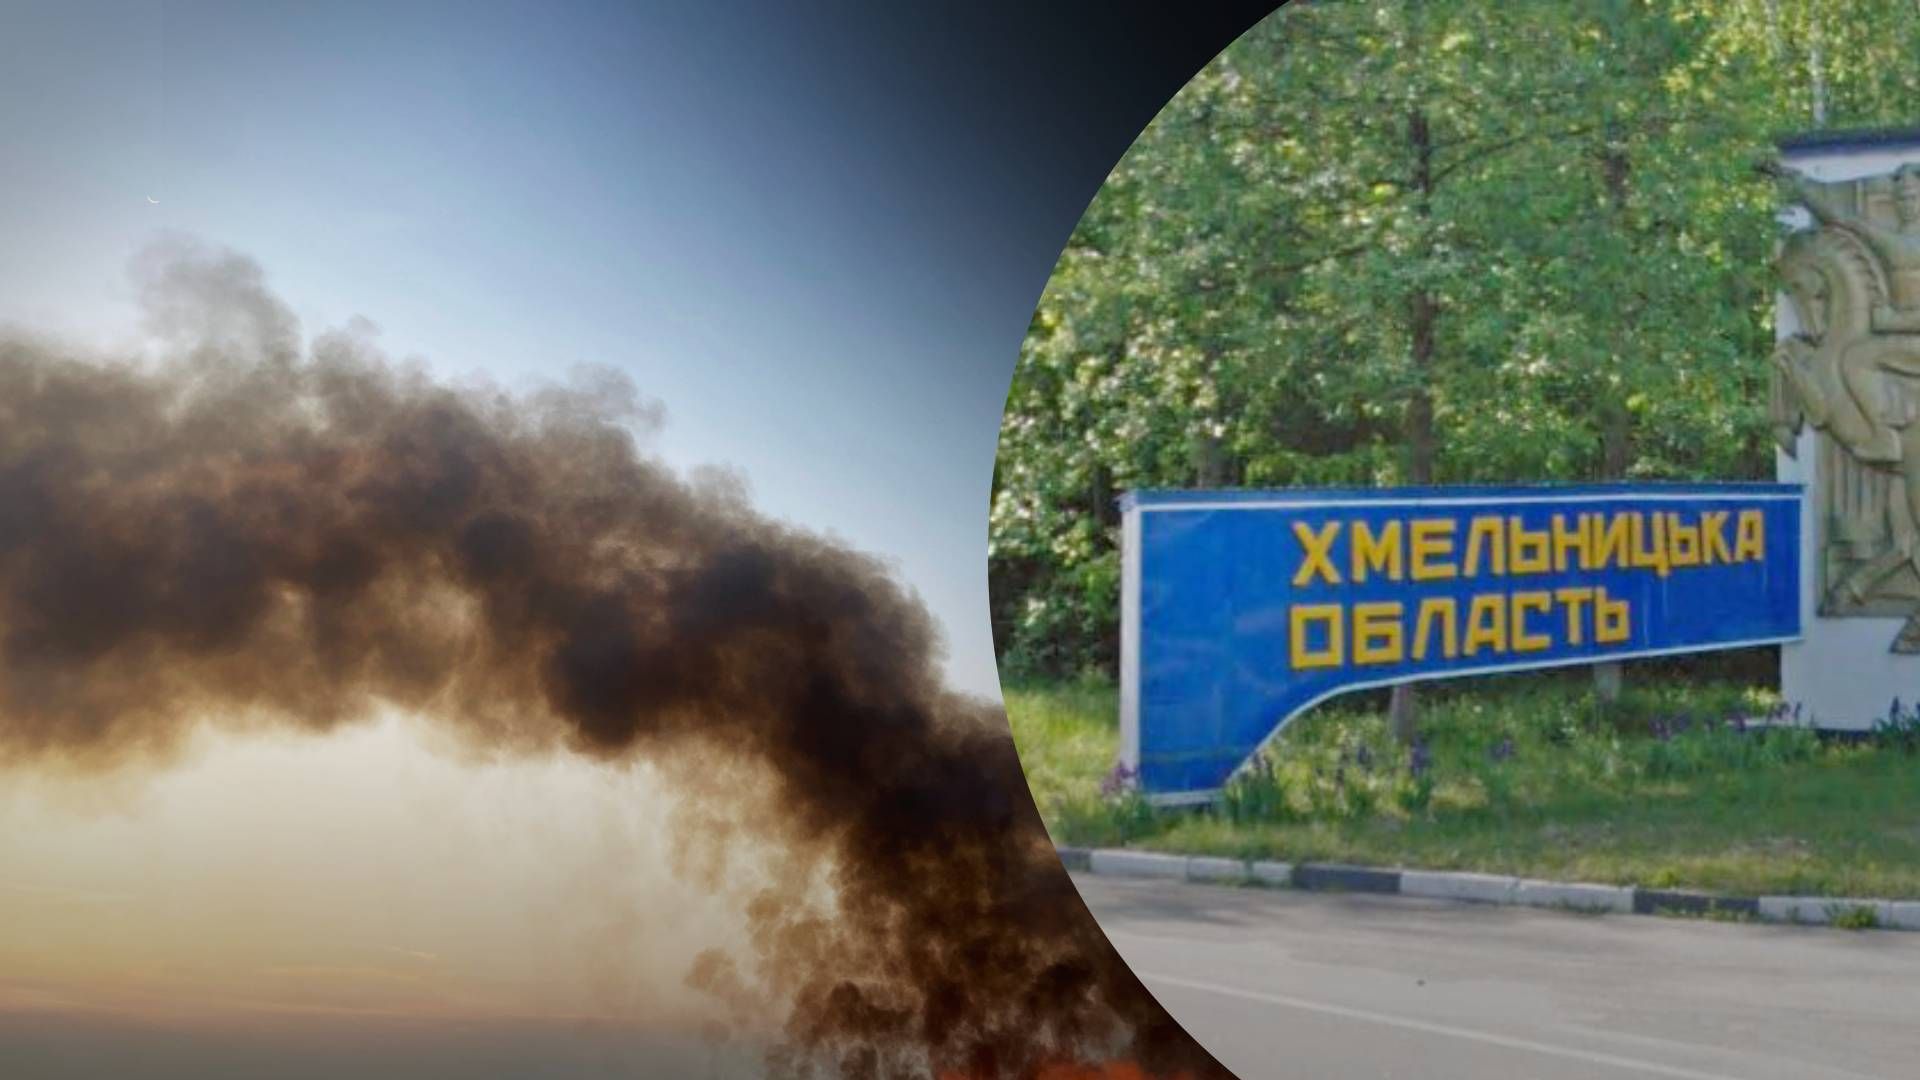 "Кричи изо всей силы": в сети показали видео спасения 21-летней девушки в Хмельницком - 24 Канал